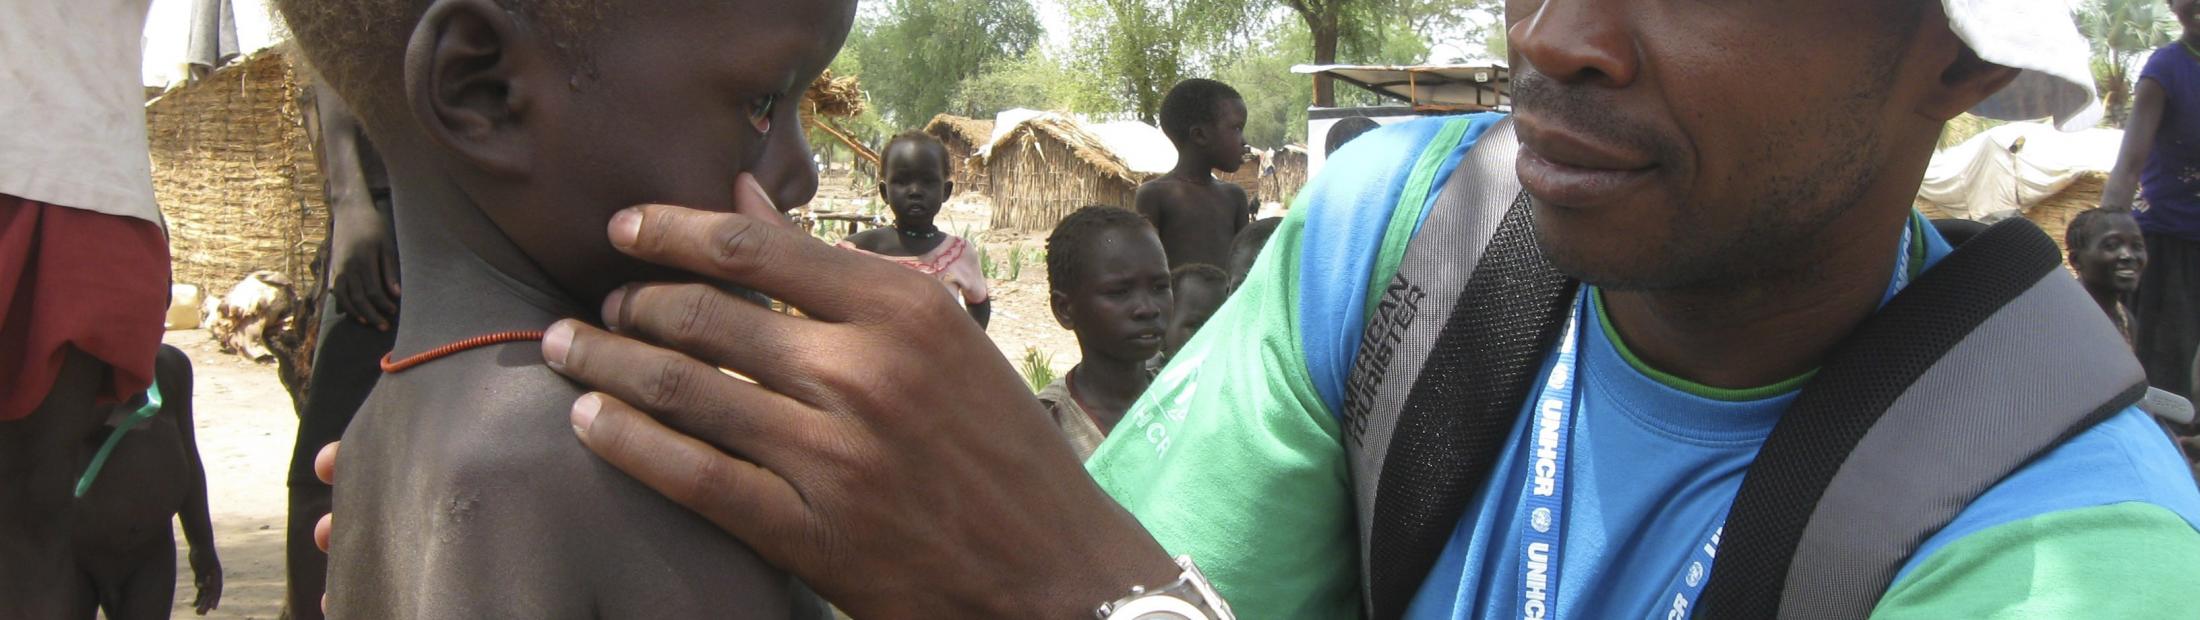 La escasez de alimentos afecta a los campos de refugiados de Sudán del Sur